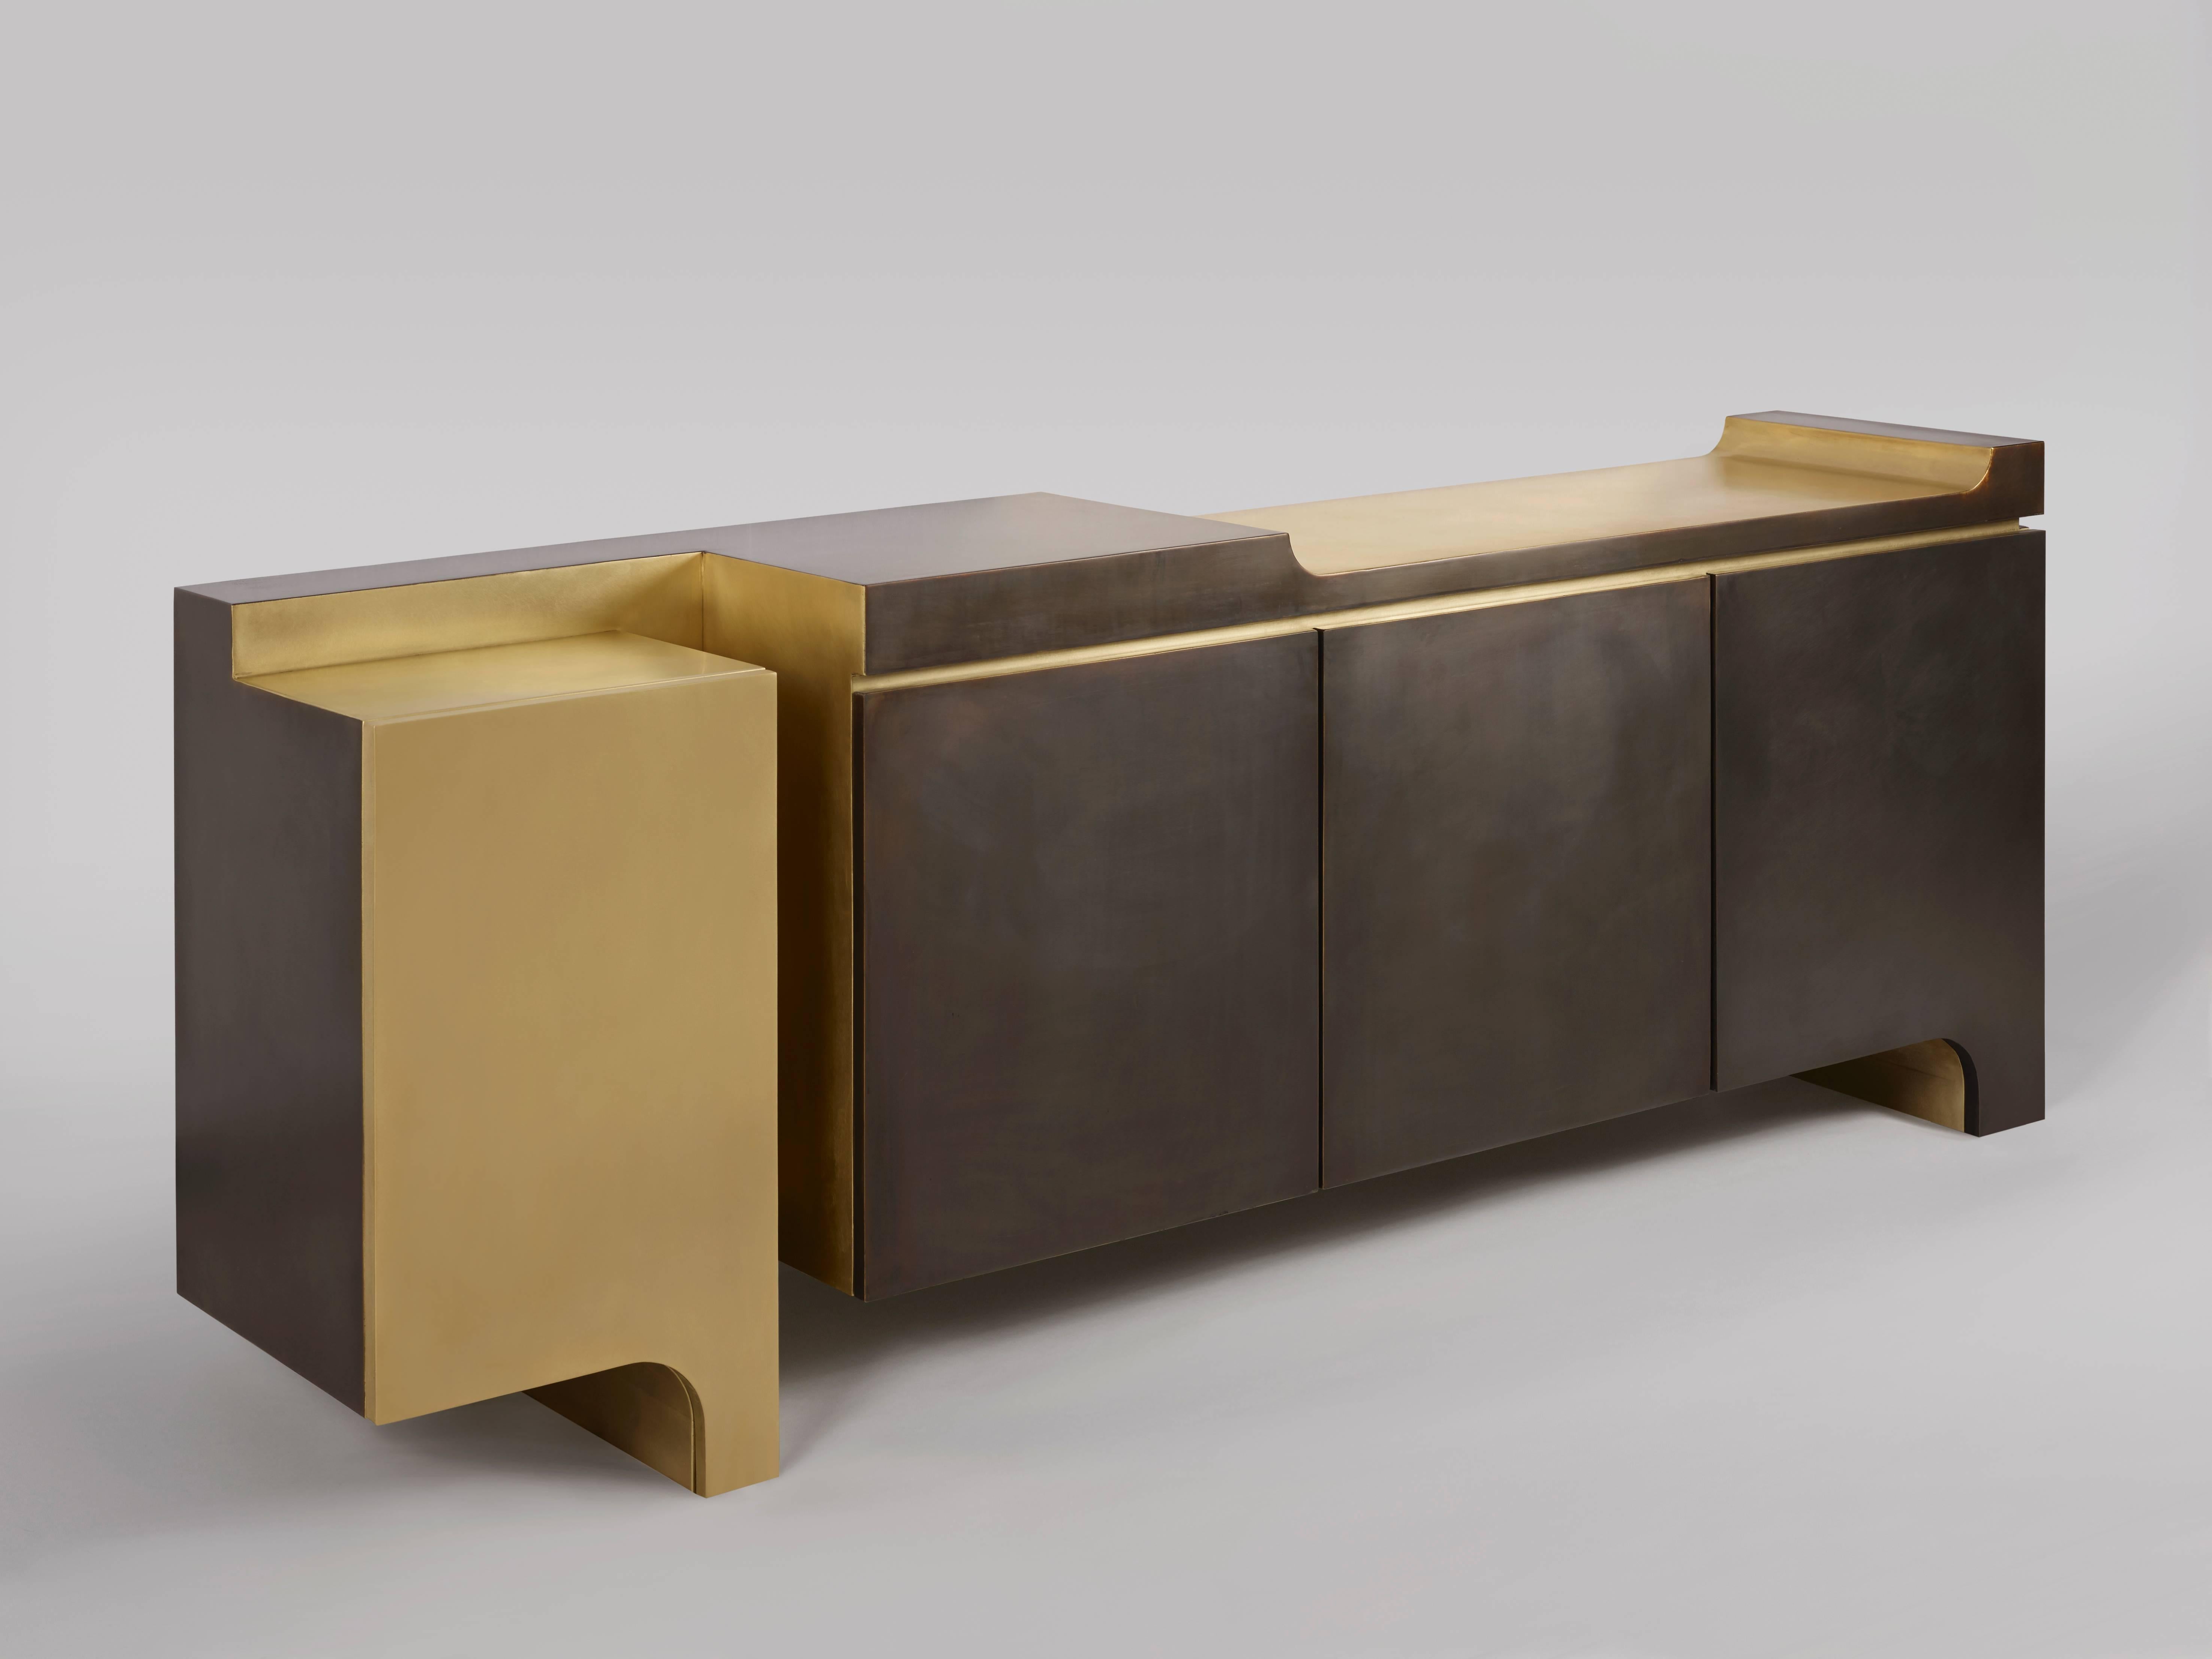 Le cabinet XiangSheng II est une élégante pièce de collection qui combine des surfaces en bronze brossé, d'une couleur champagne très raffinée, et des surfaces en bronze oxydé, d'une patine brune intense. Elle fait partie de la collection de meubles